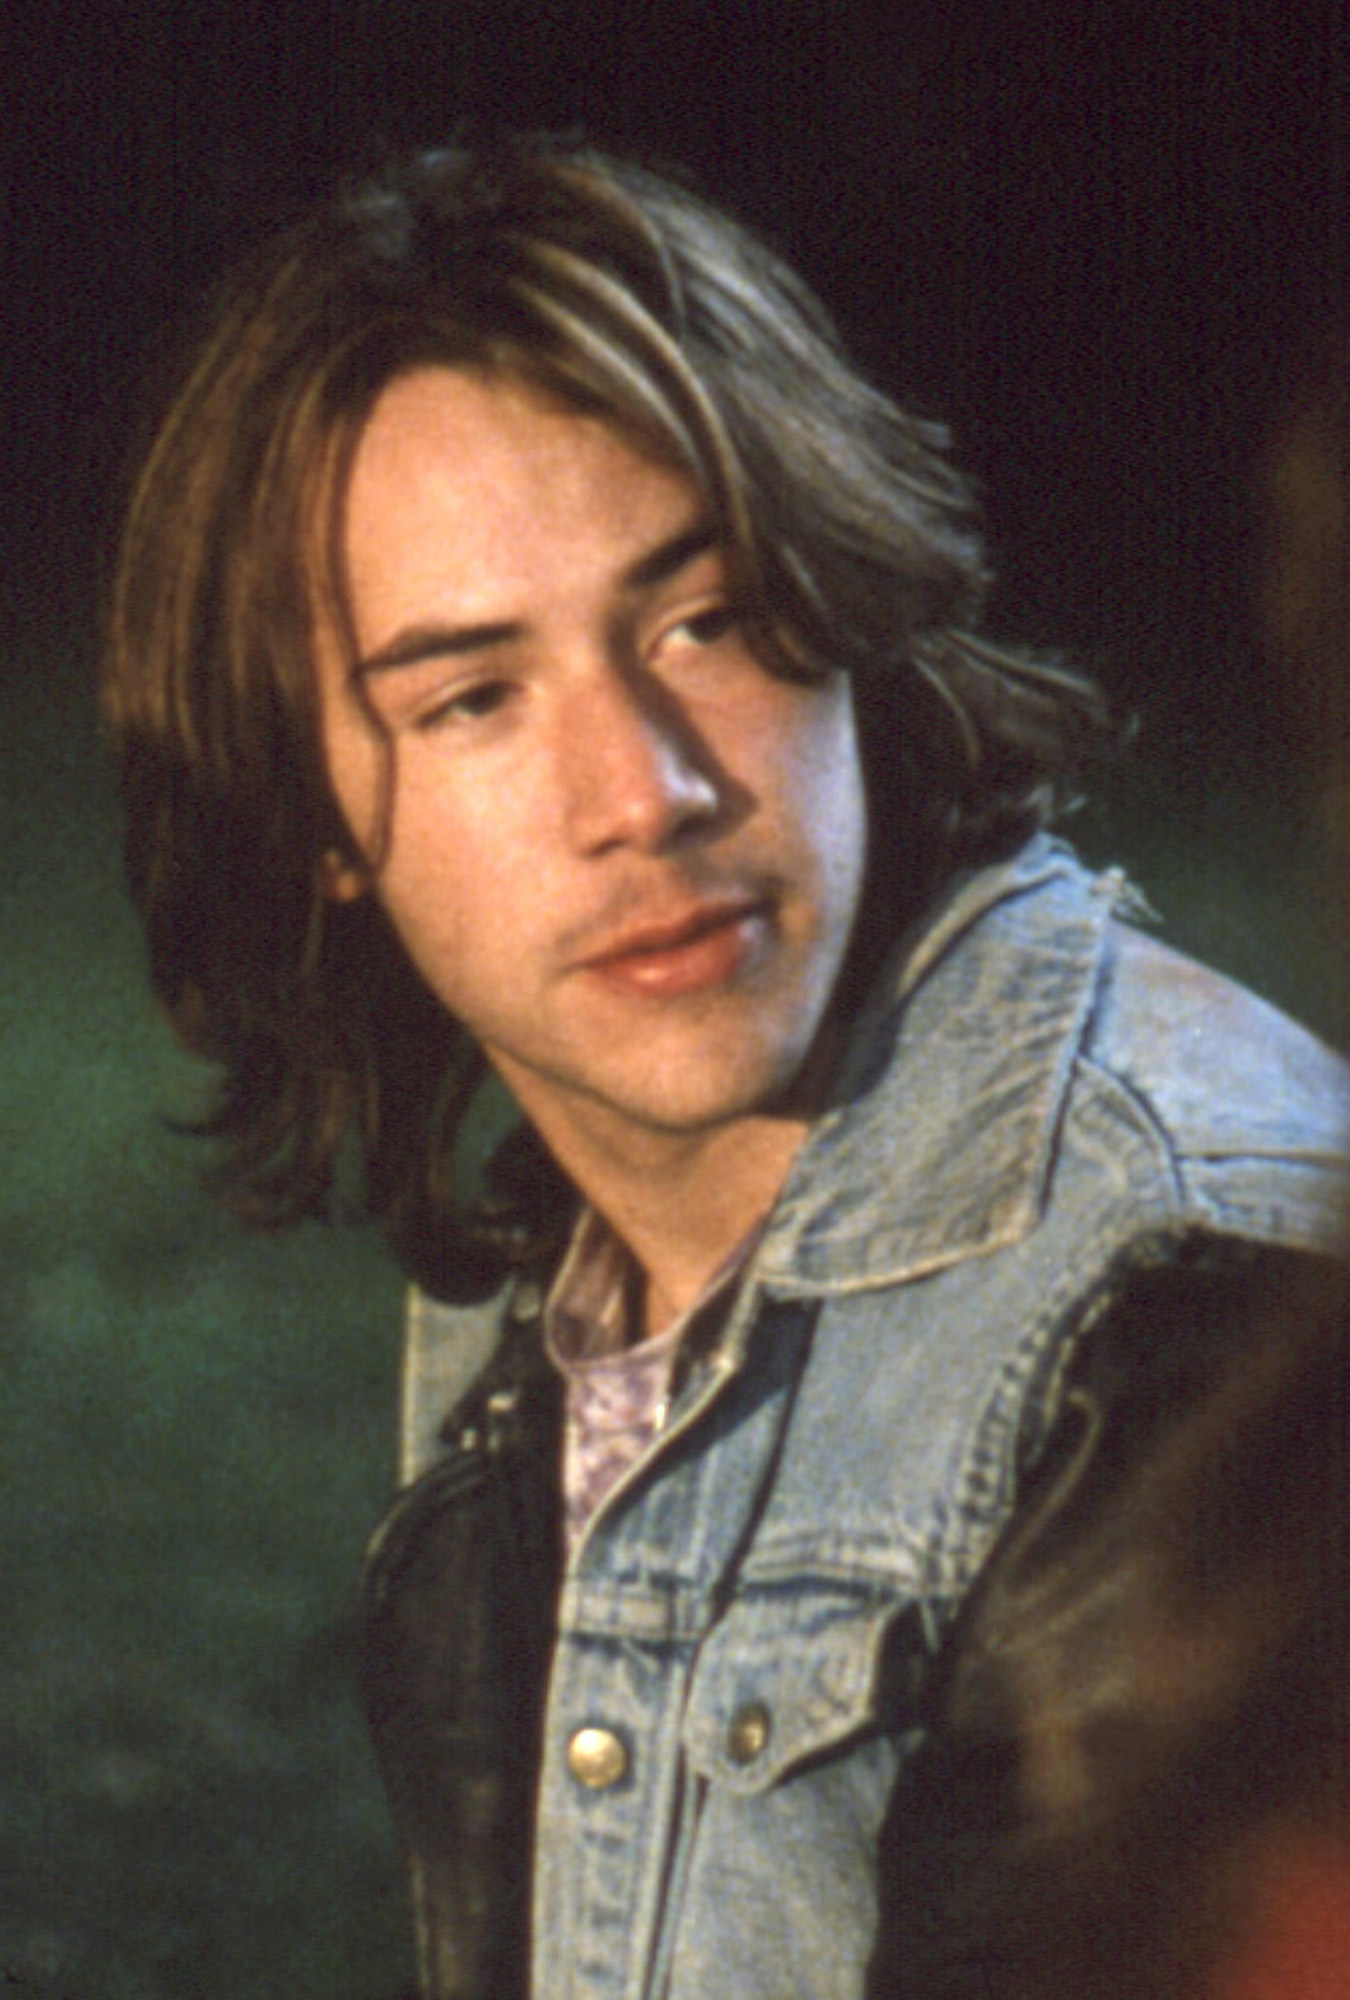 Keanu Reeves wearing a jean/leather jacket, sitting in a field